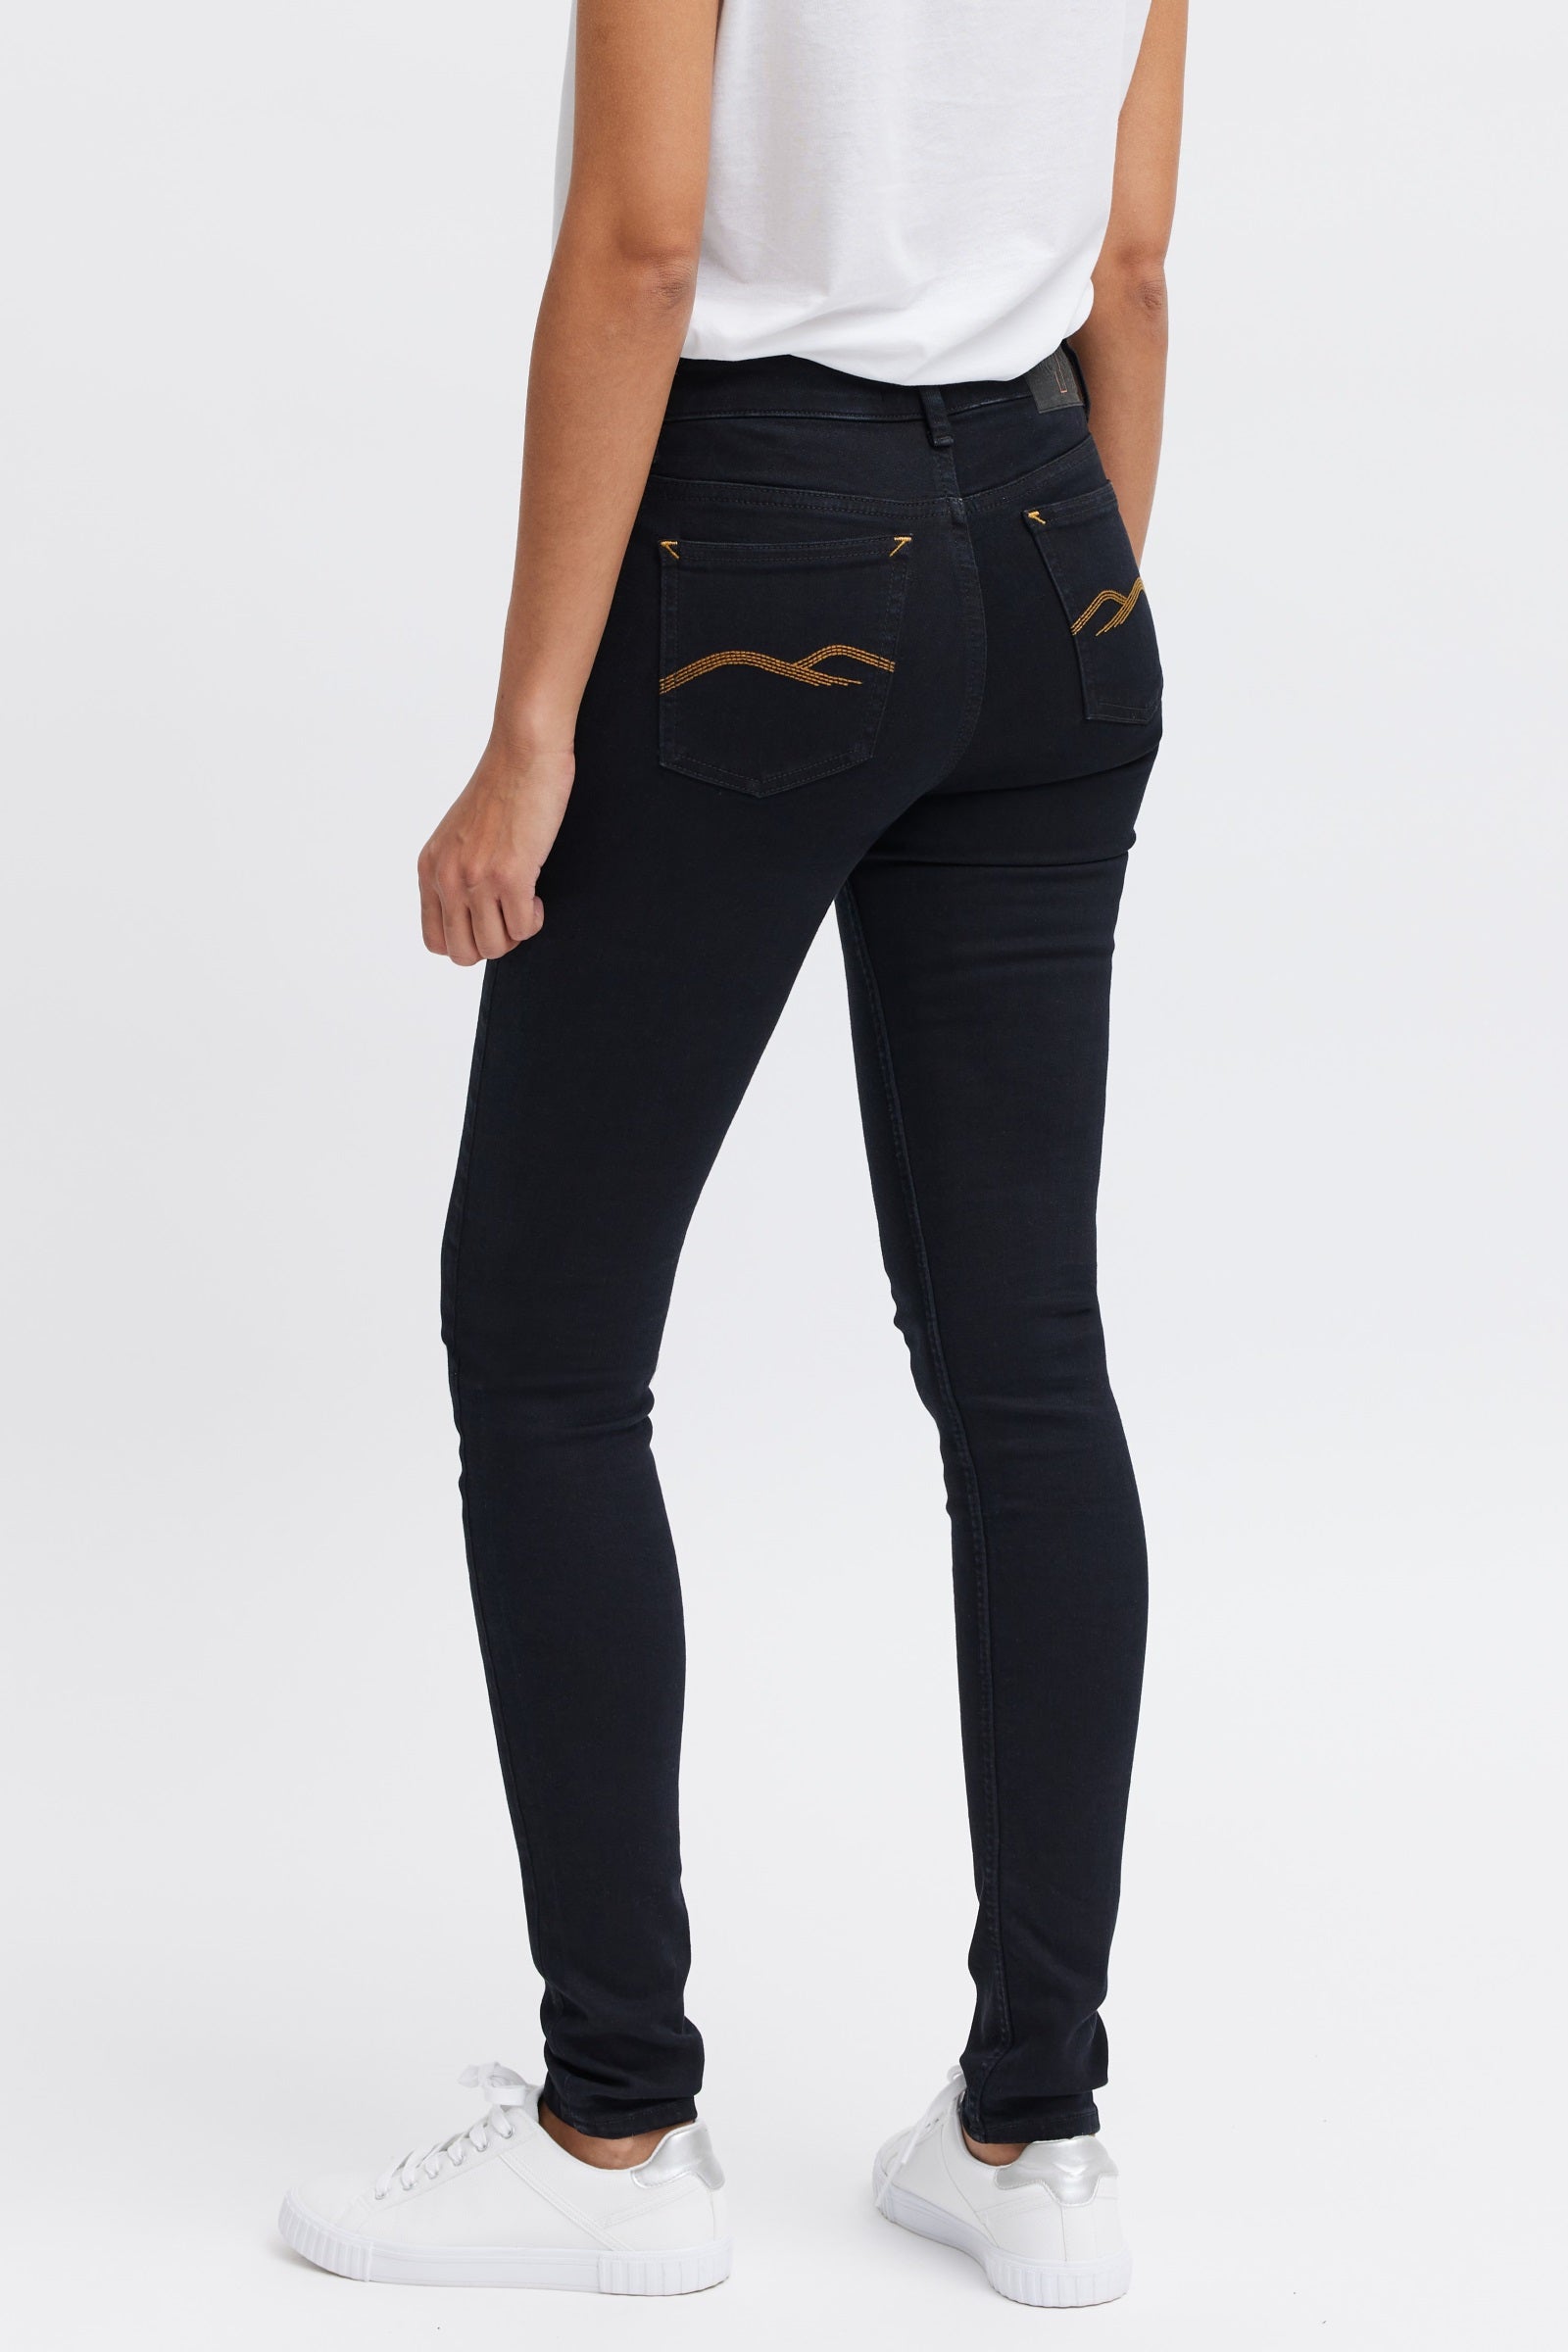 Women's organic black jeans by organsk®